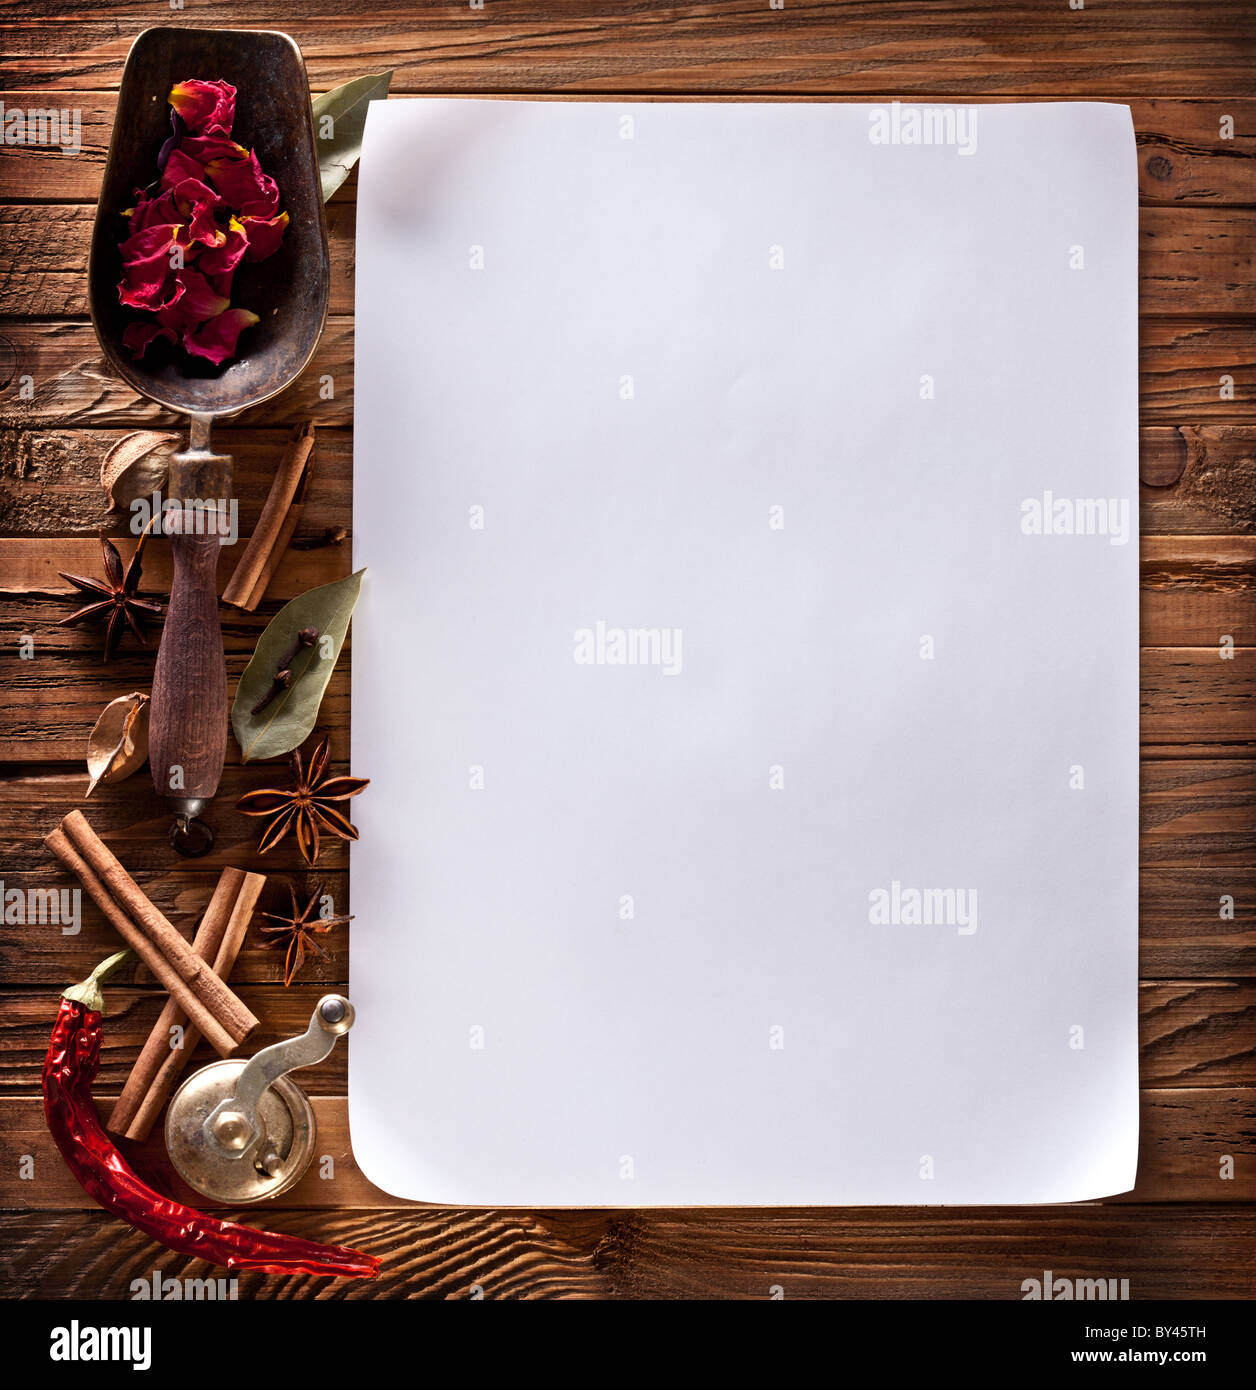 Imagen de papel blanco con especias sobre una superficie de madera Foto de stock